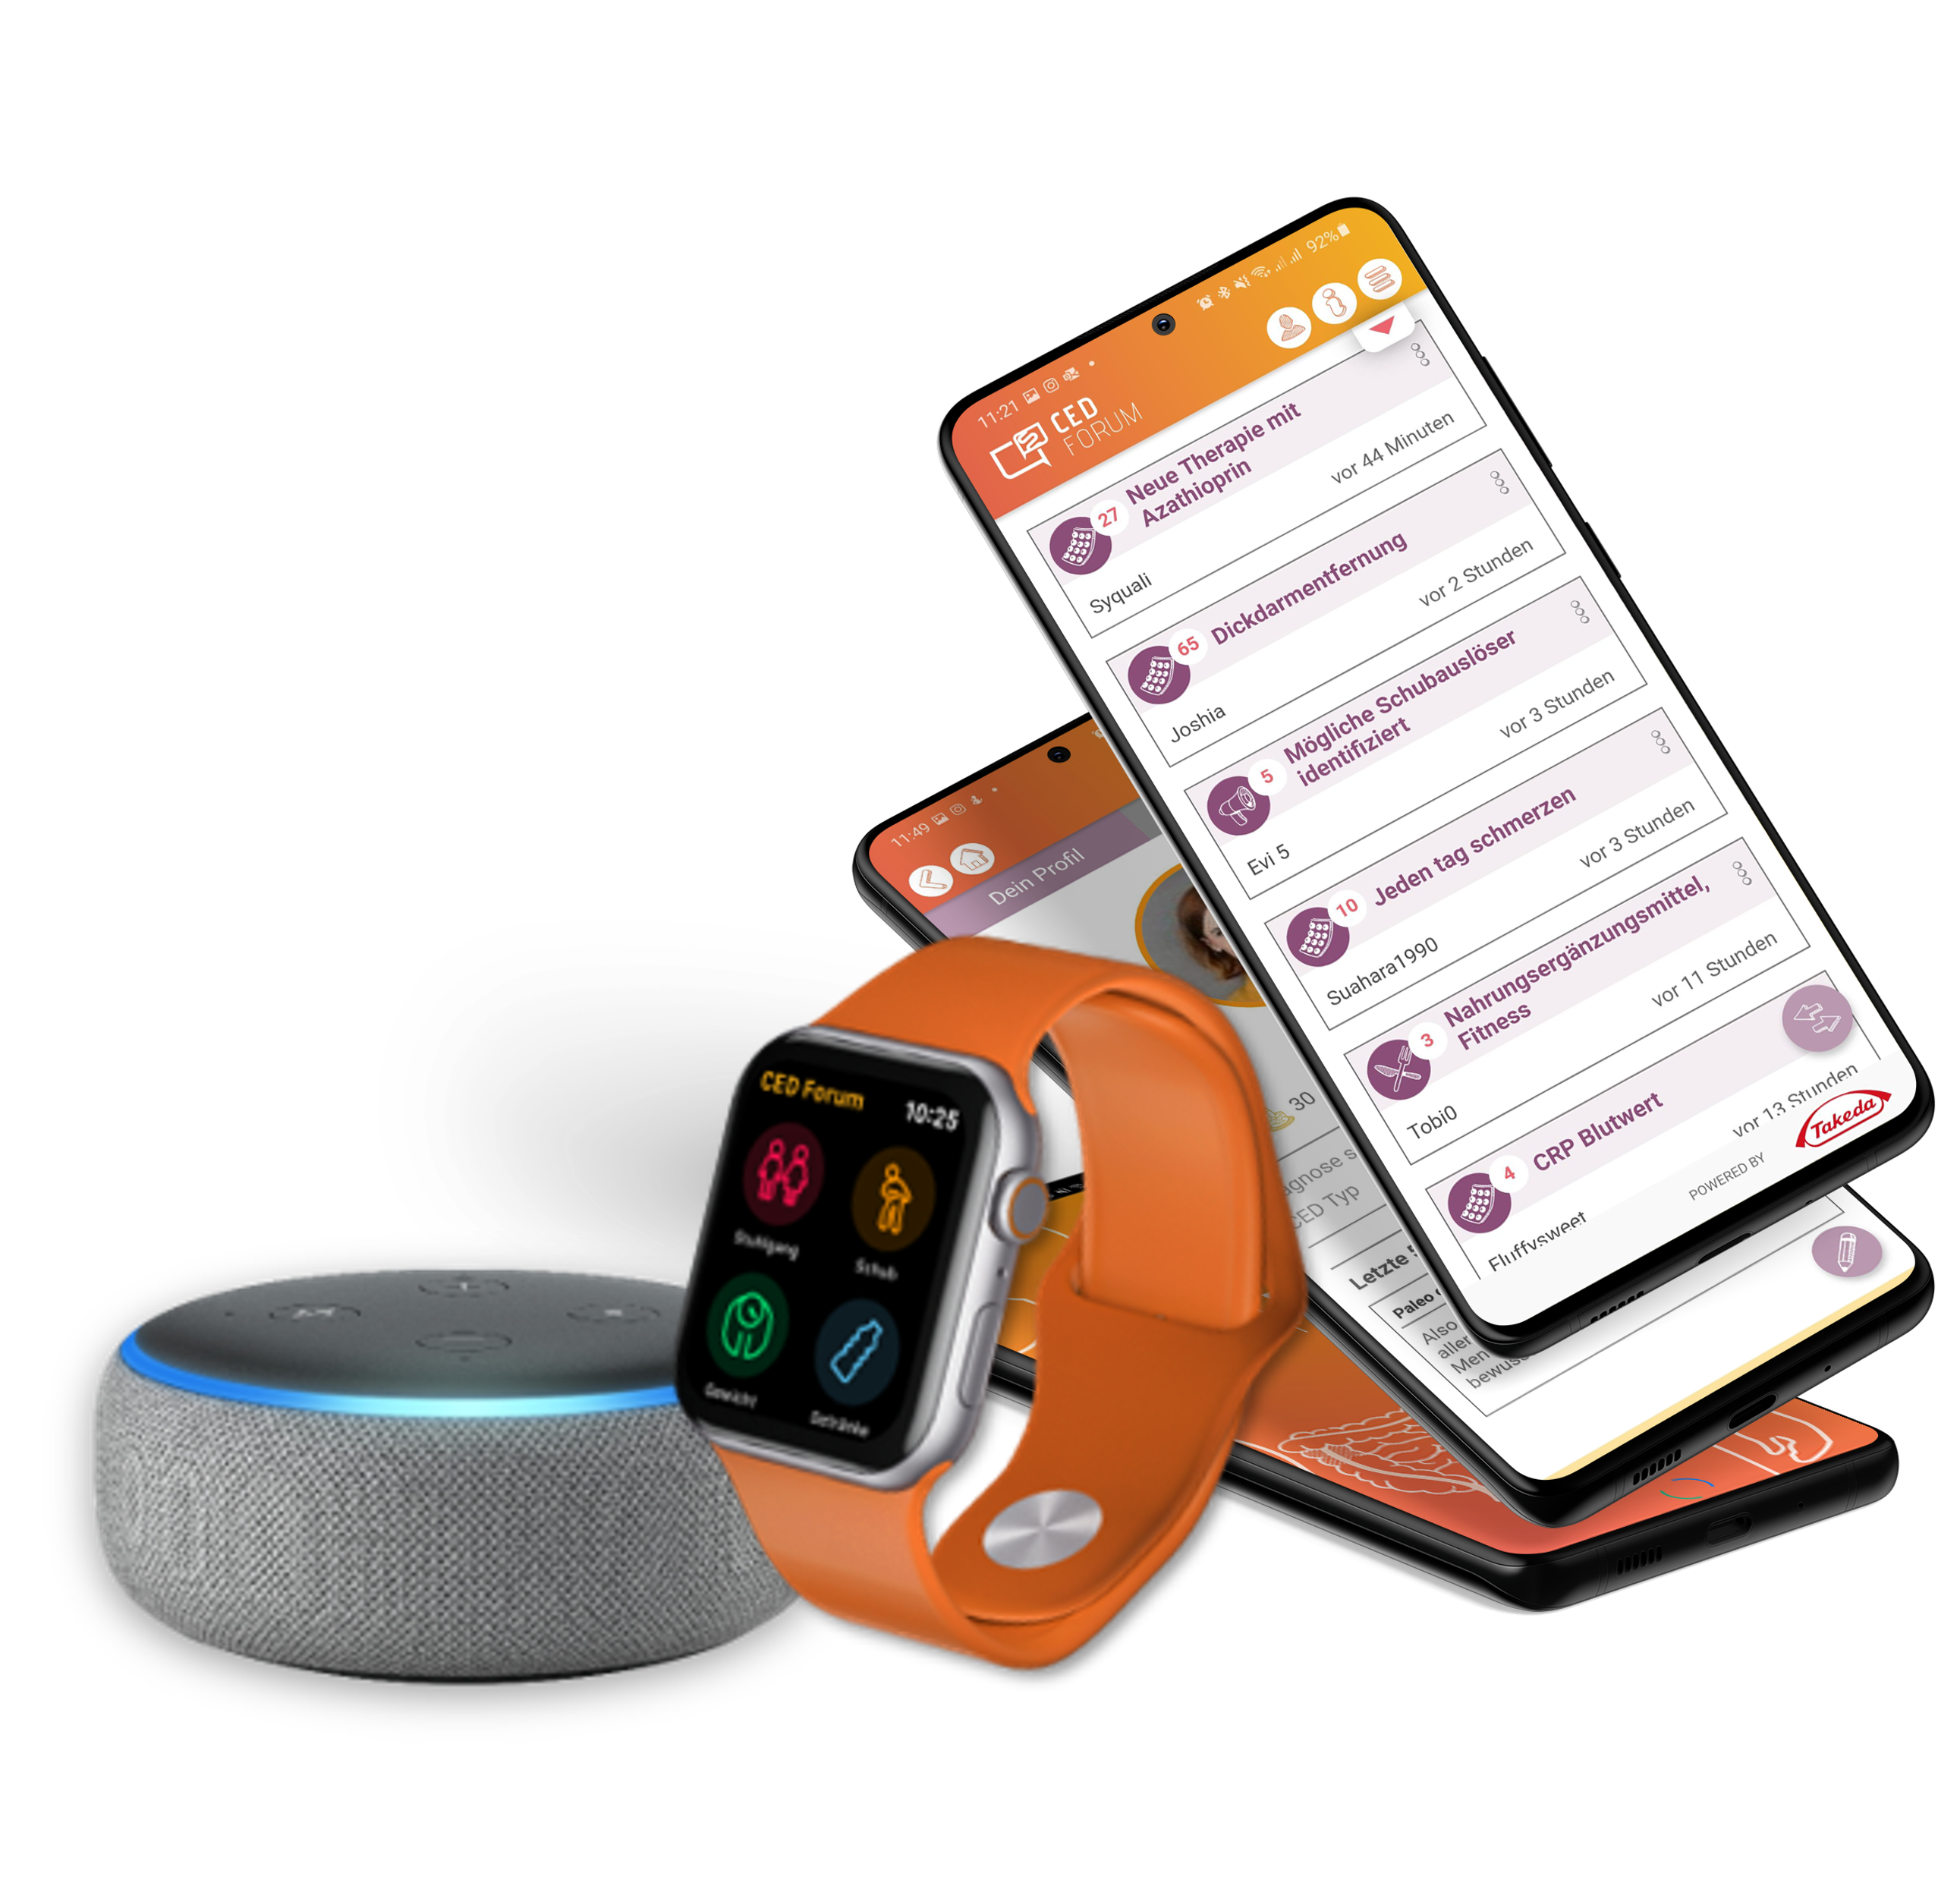 Darstellung der CED Forum App inklusive Alexa und Apple Watch